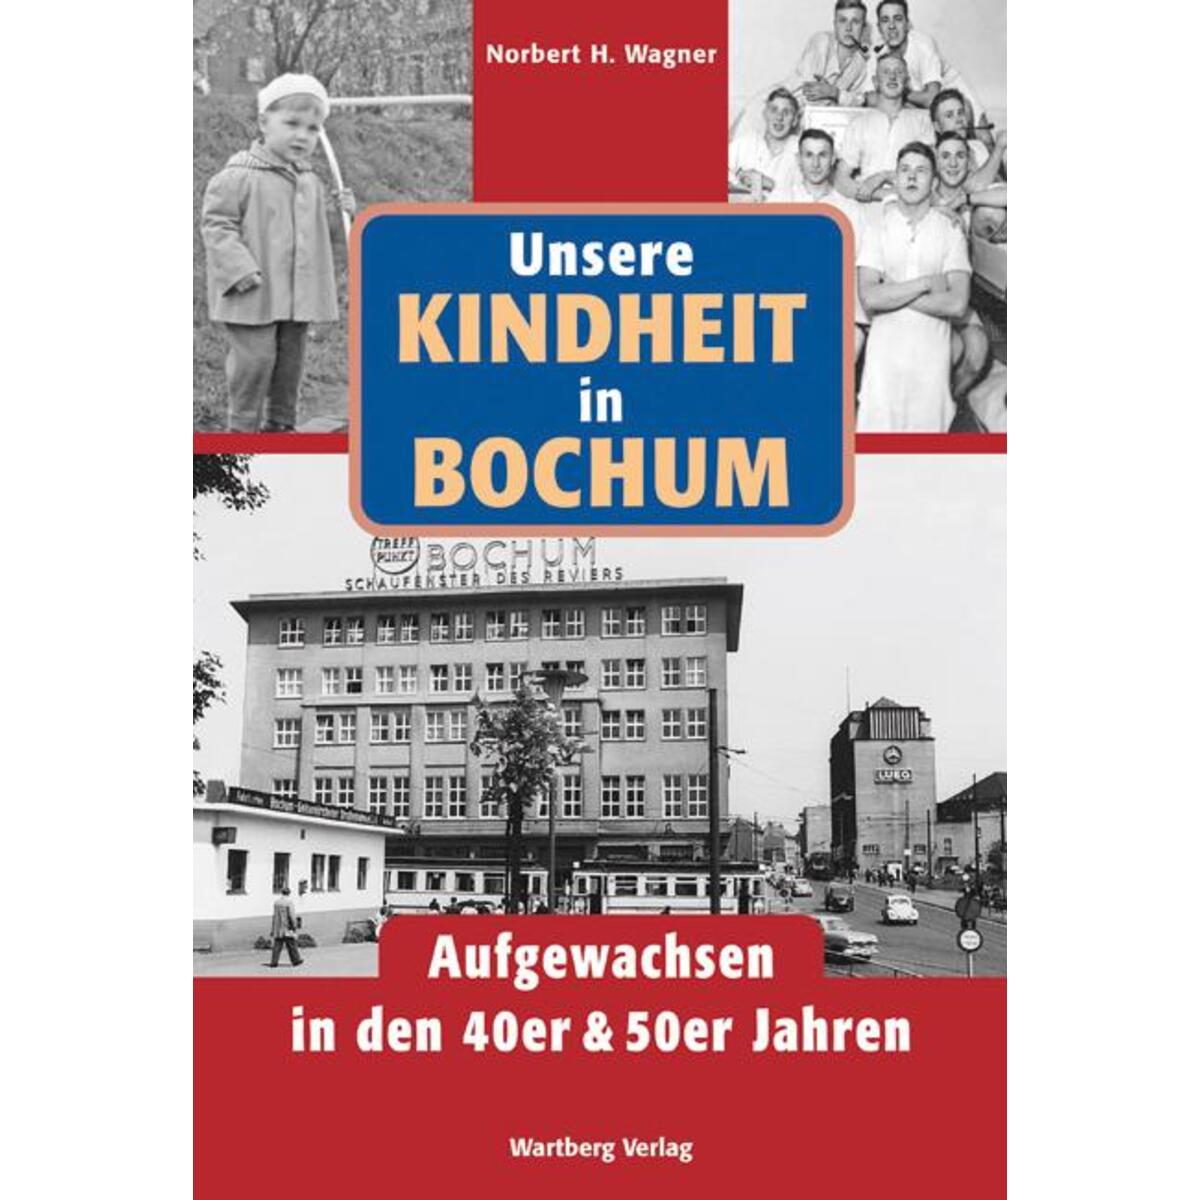 Unsere Kindheit in Bochum. Aufgewachsen in den 40er & 50er Jahren von Wartberg Verlag